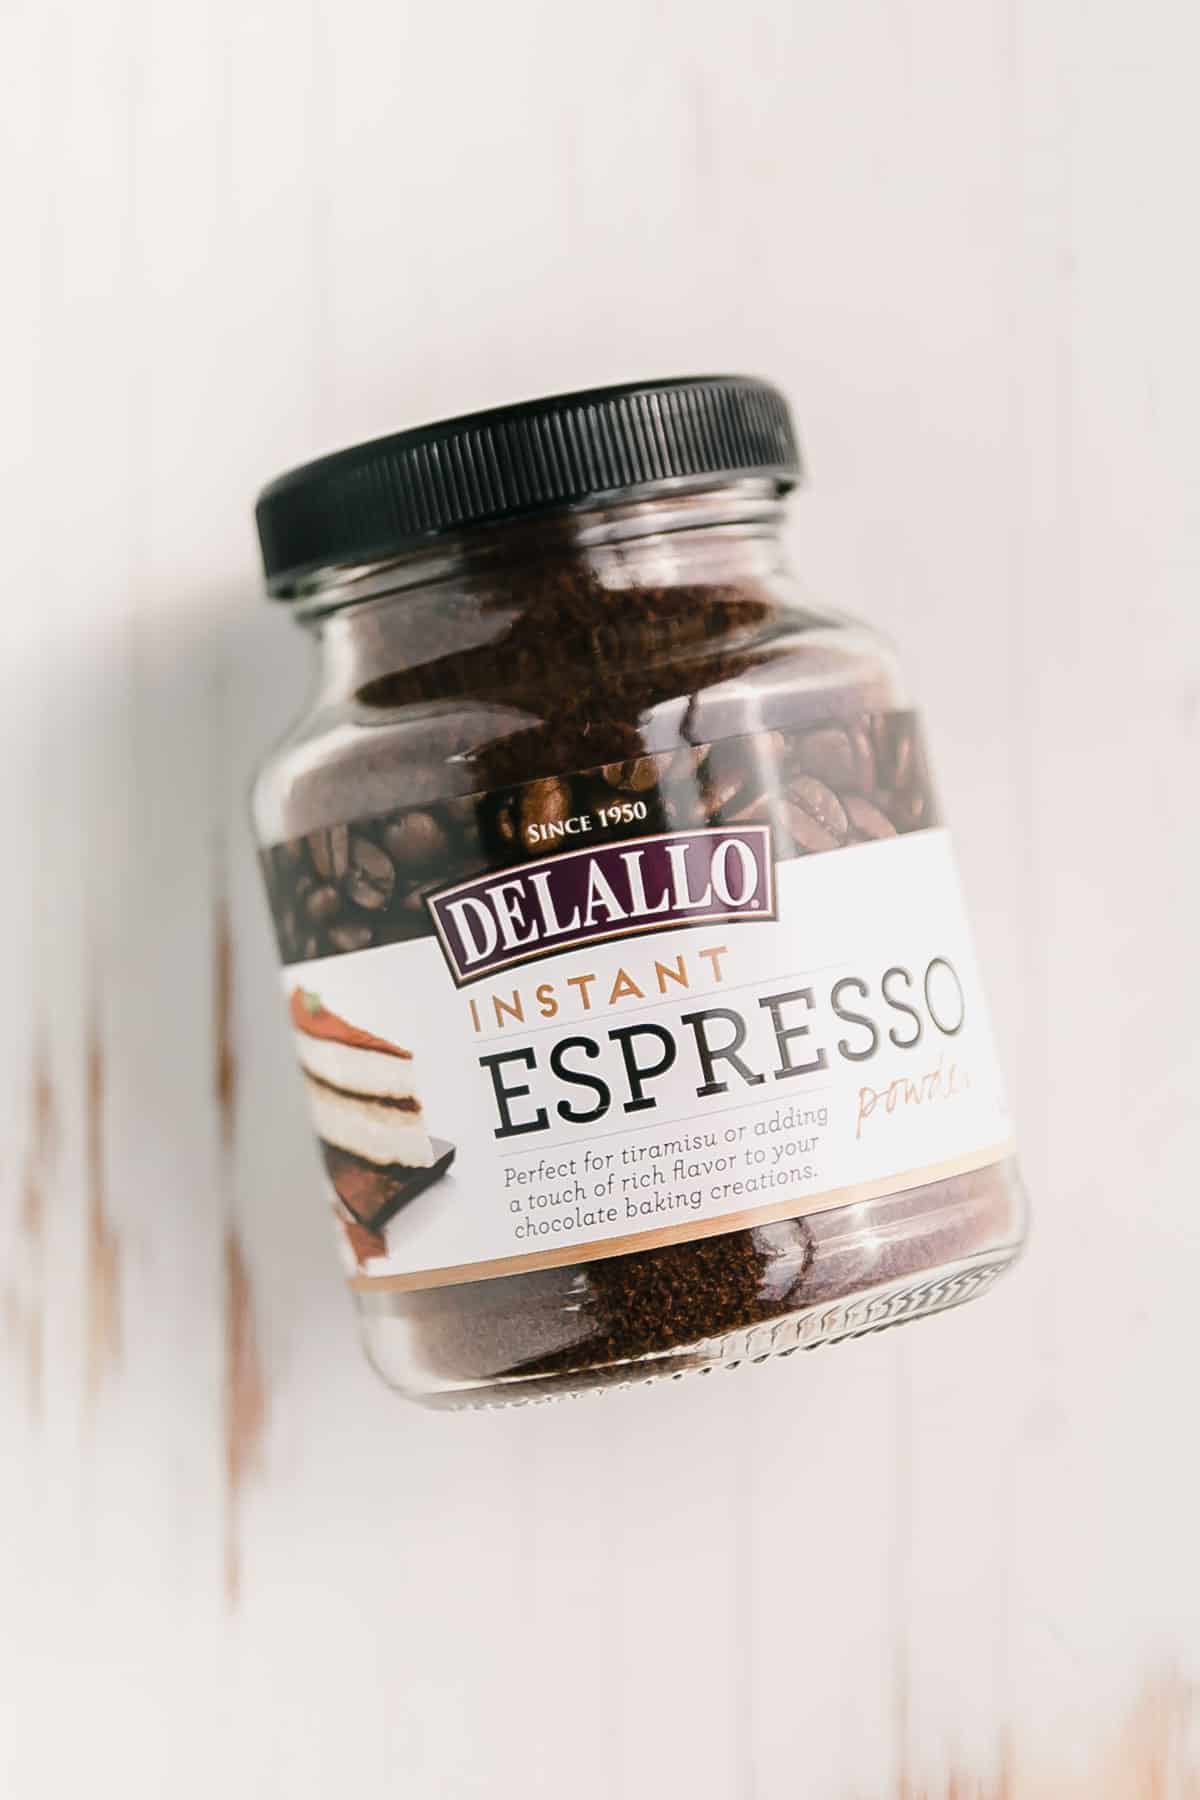 Delallo espresso powder on white surface.